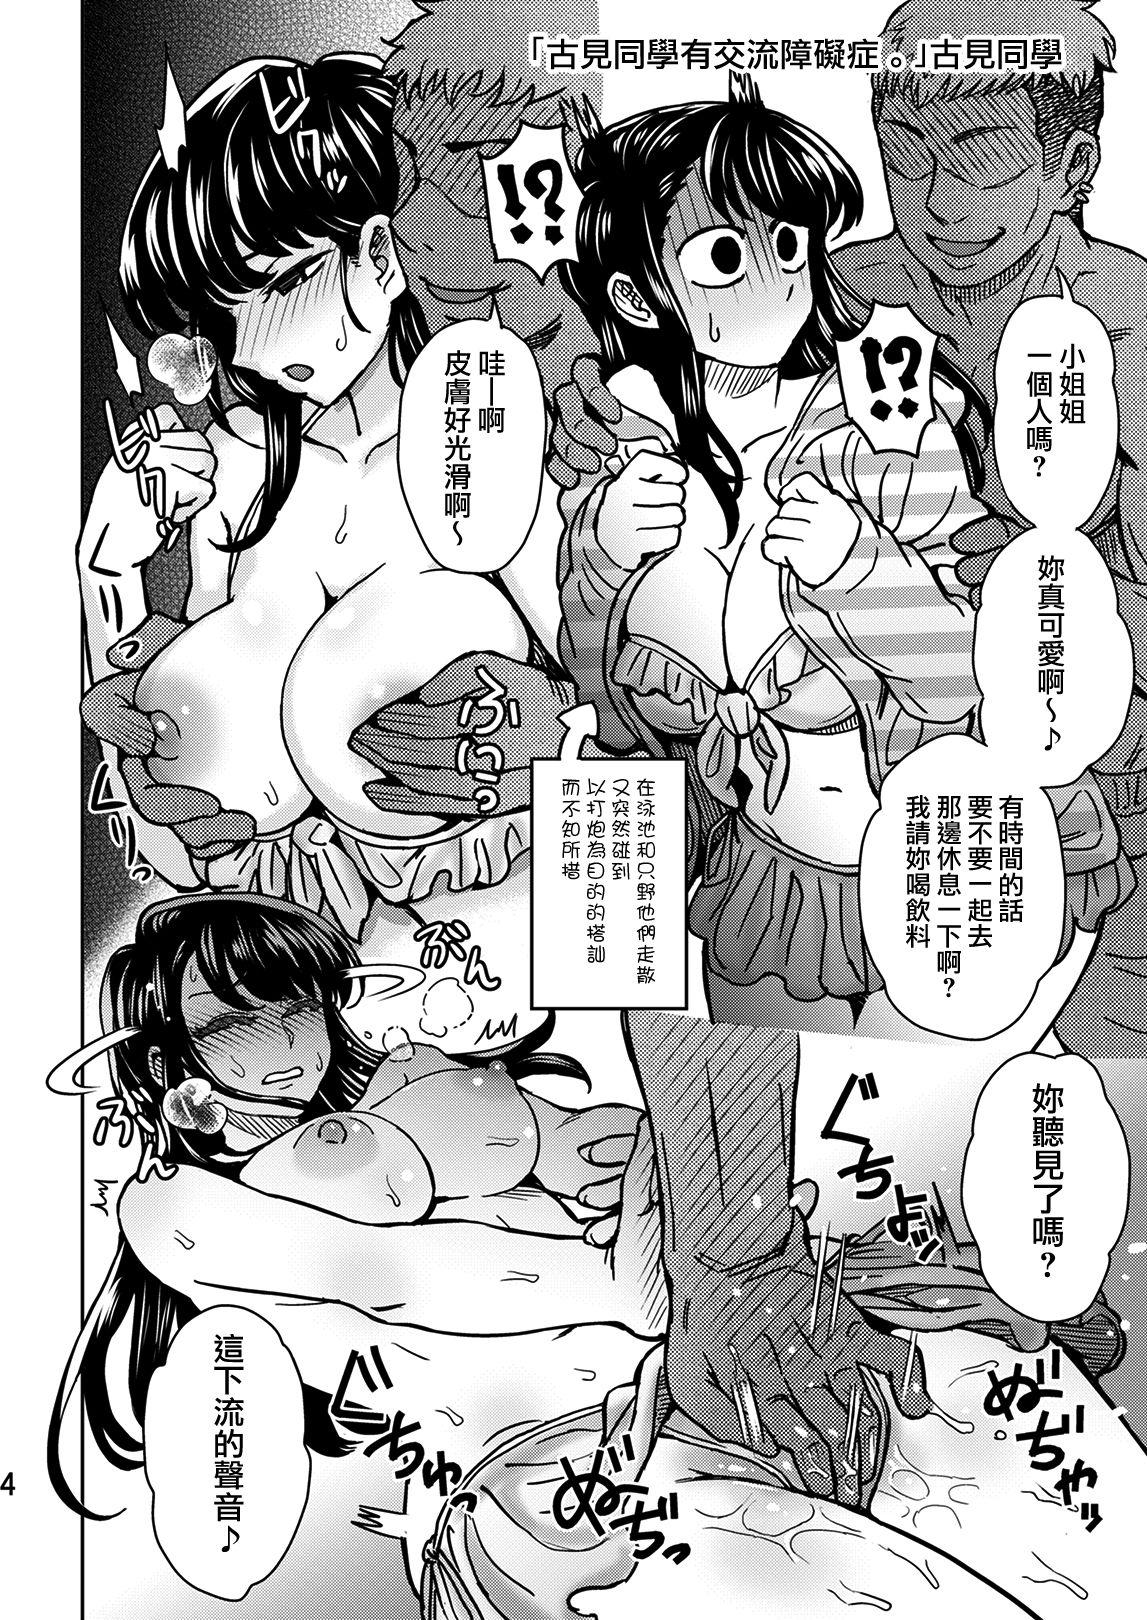 Small C95 Yorozu NTR Short Manga Shuu - Komi san wa komyushou desu. Doggystyle - Page 5